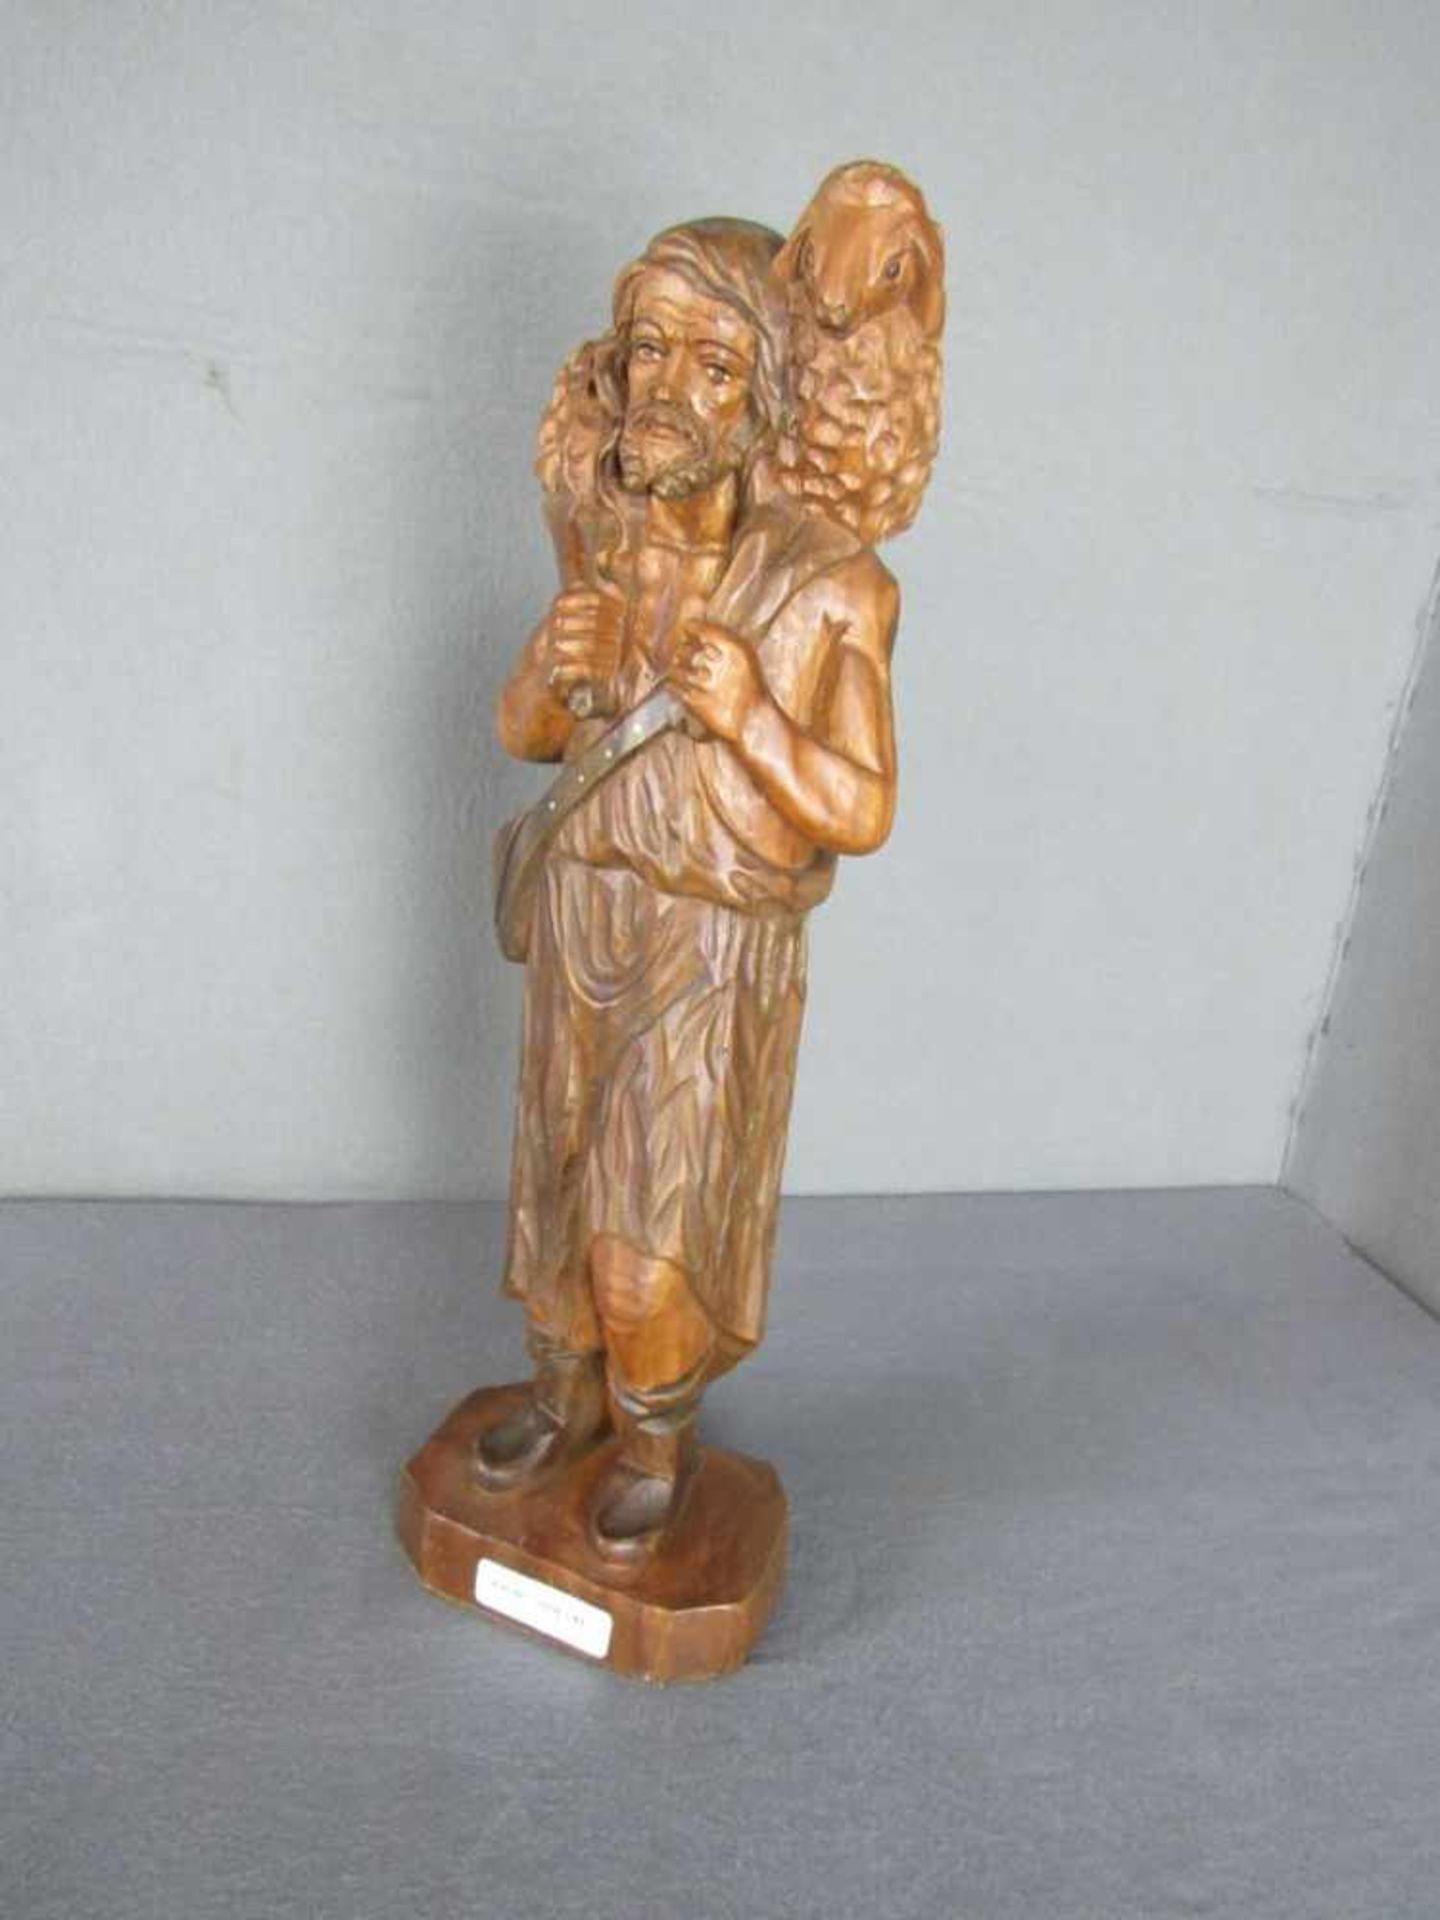 Skulptur, Christlich, 46cm hoch, handgeschnitzt- - -20.00 % buyer's premium on the hammer price19.00